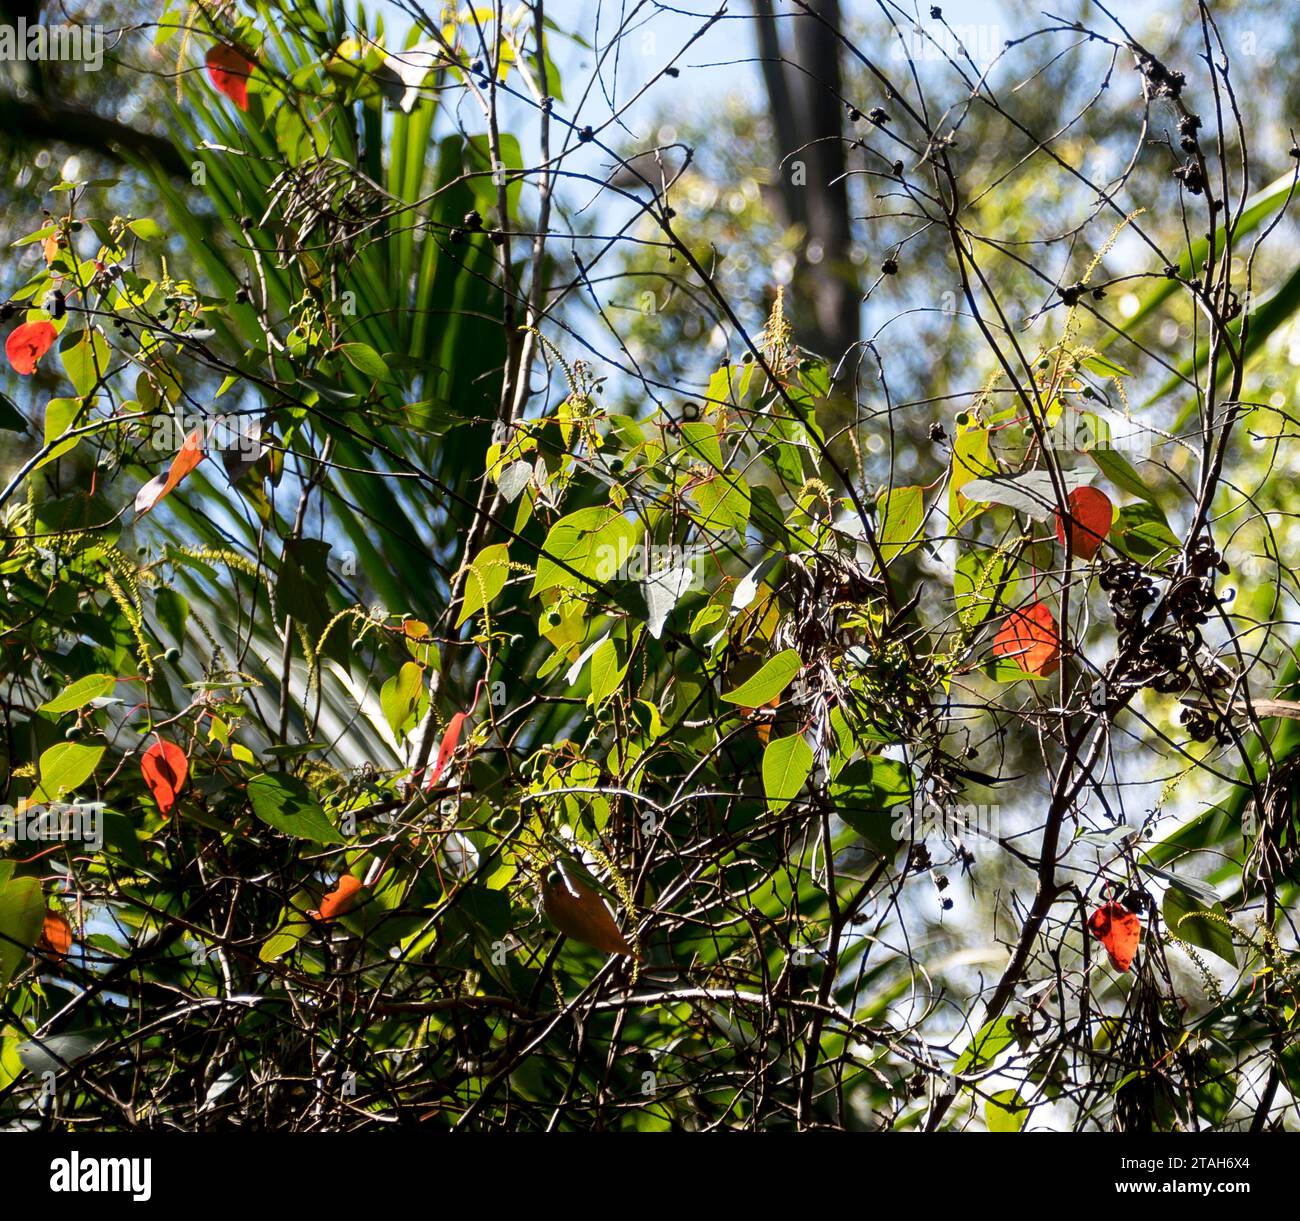 Feuilles vertes et rouges plus anciennes de Homalanthus populiolius, un arbre australien de cœur de saignement, dans la forêt tropicale humide subtropicale des basses terres du Queensland. Banque D'Images